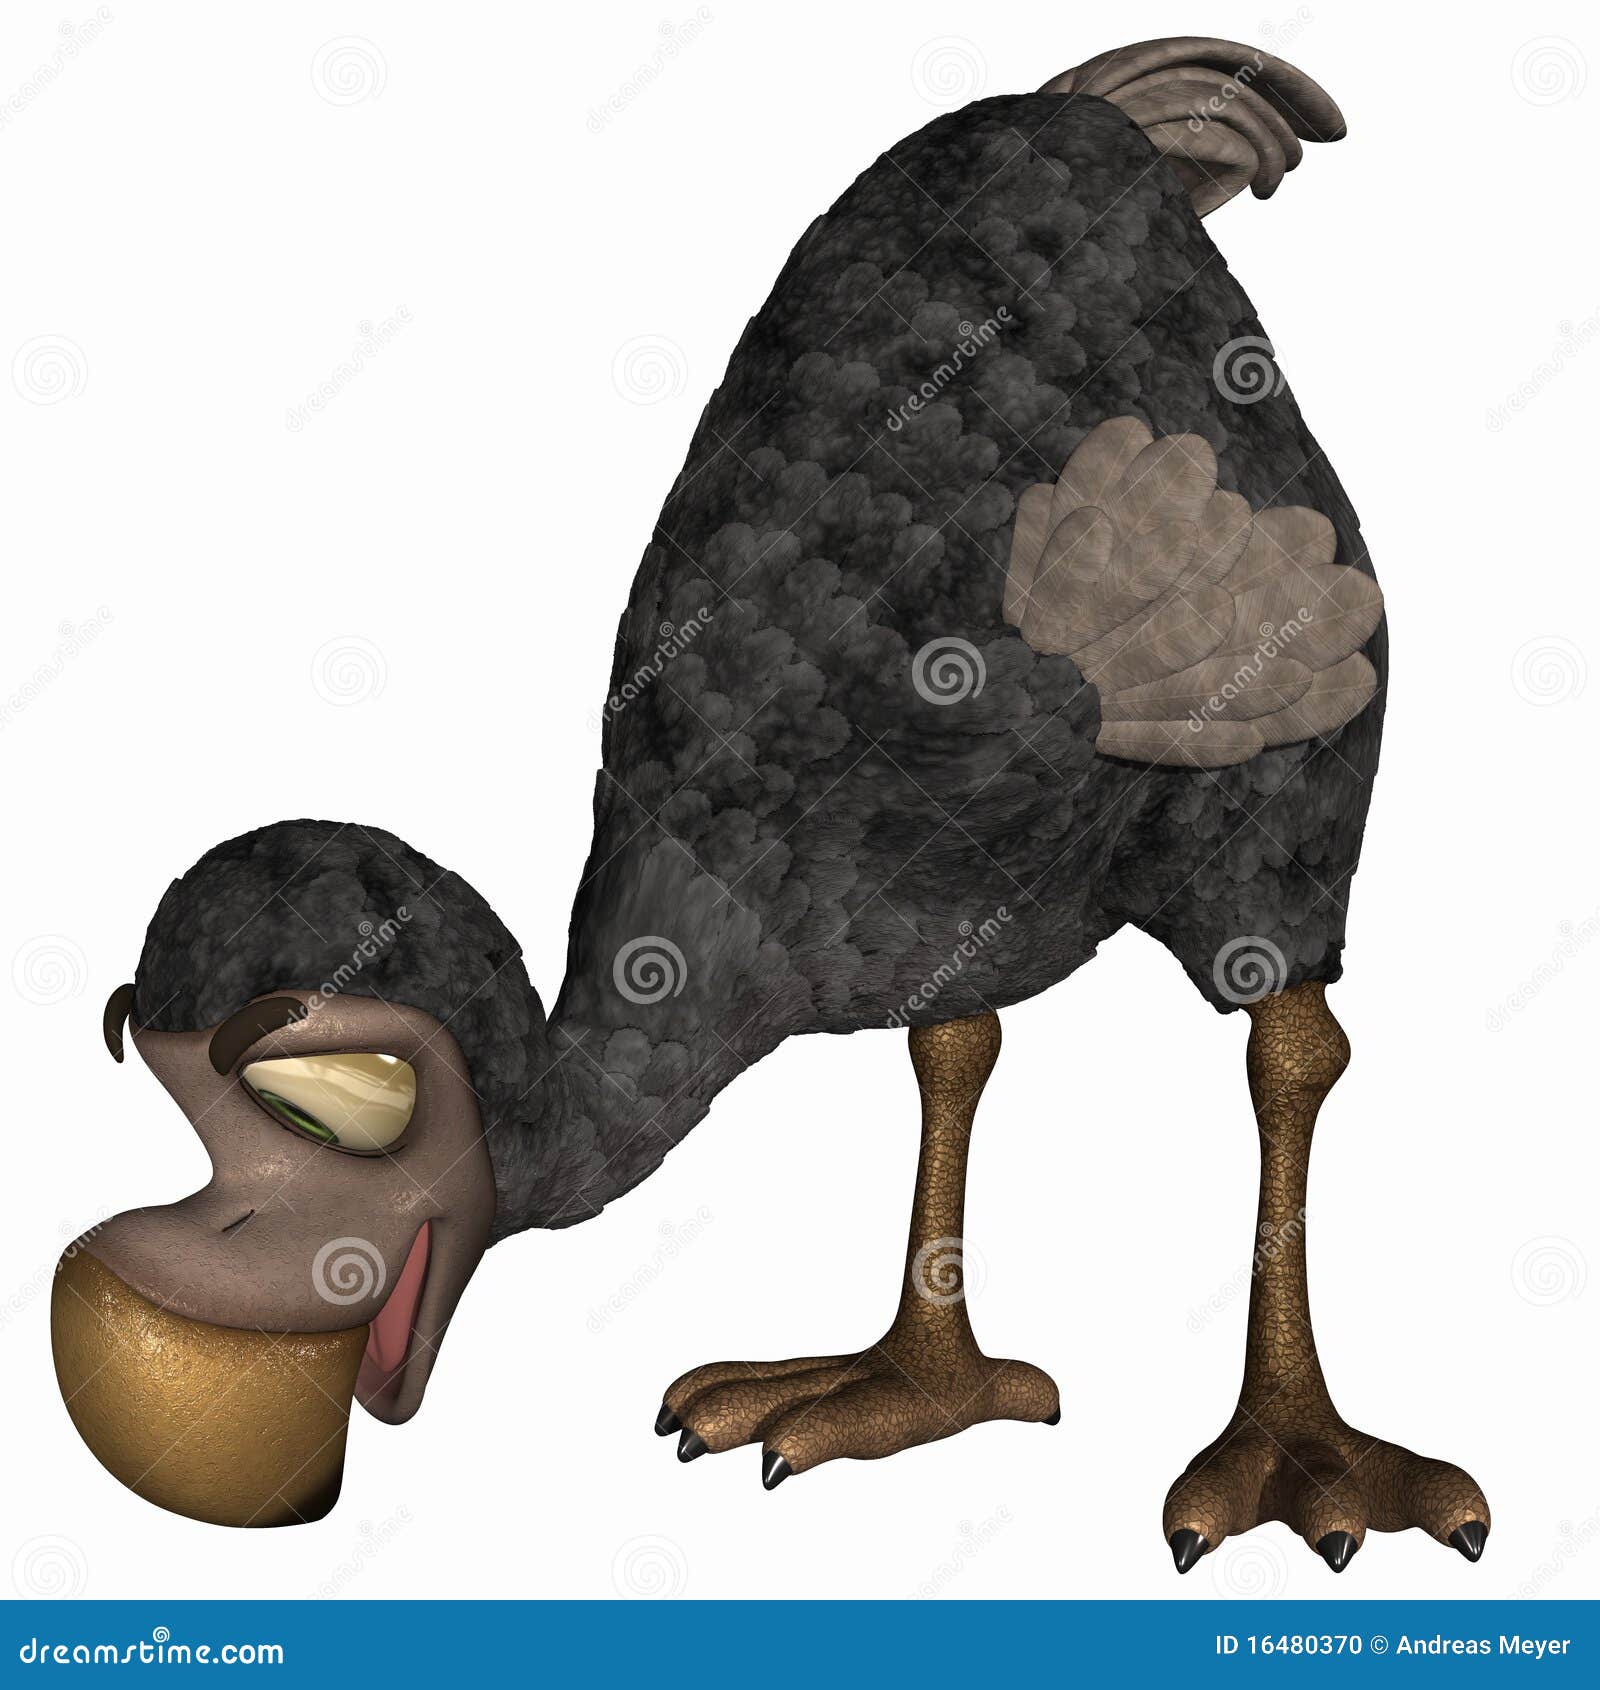 toon dodo